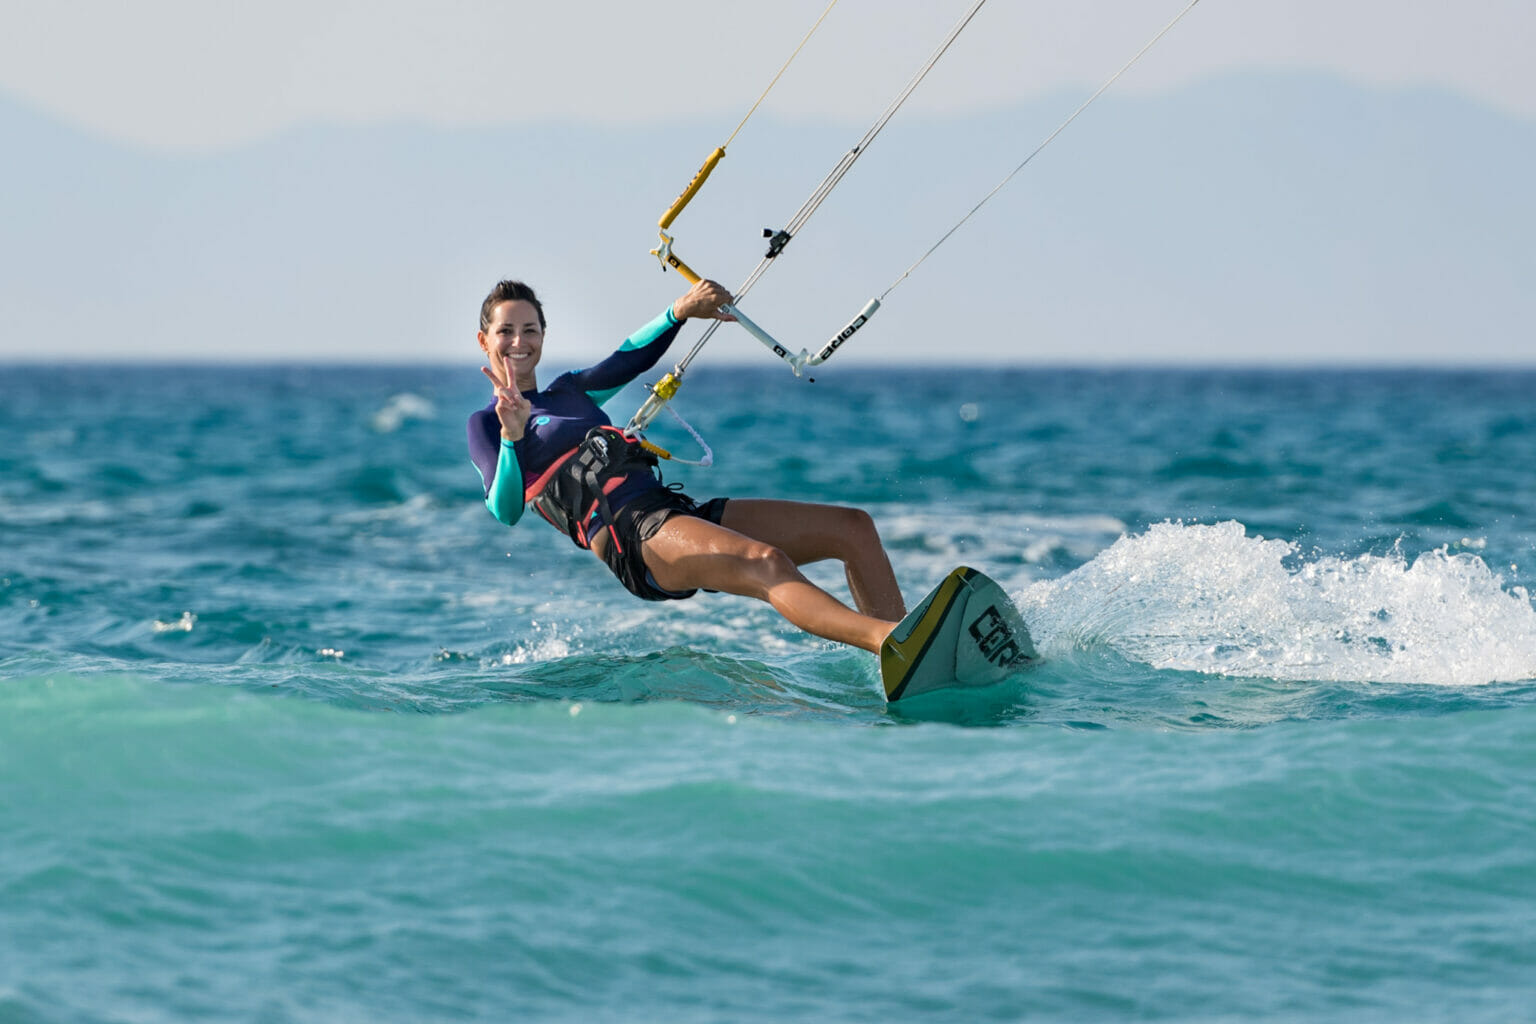 Frau zeigt Peace-Zeichen beim Kitesurfen auf dem offenen Meer